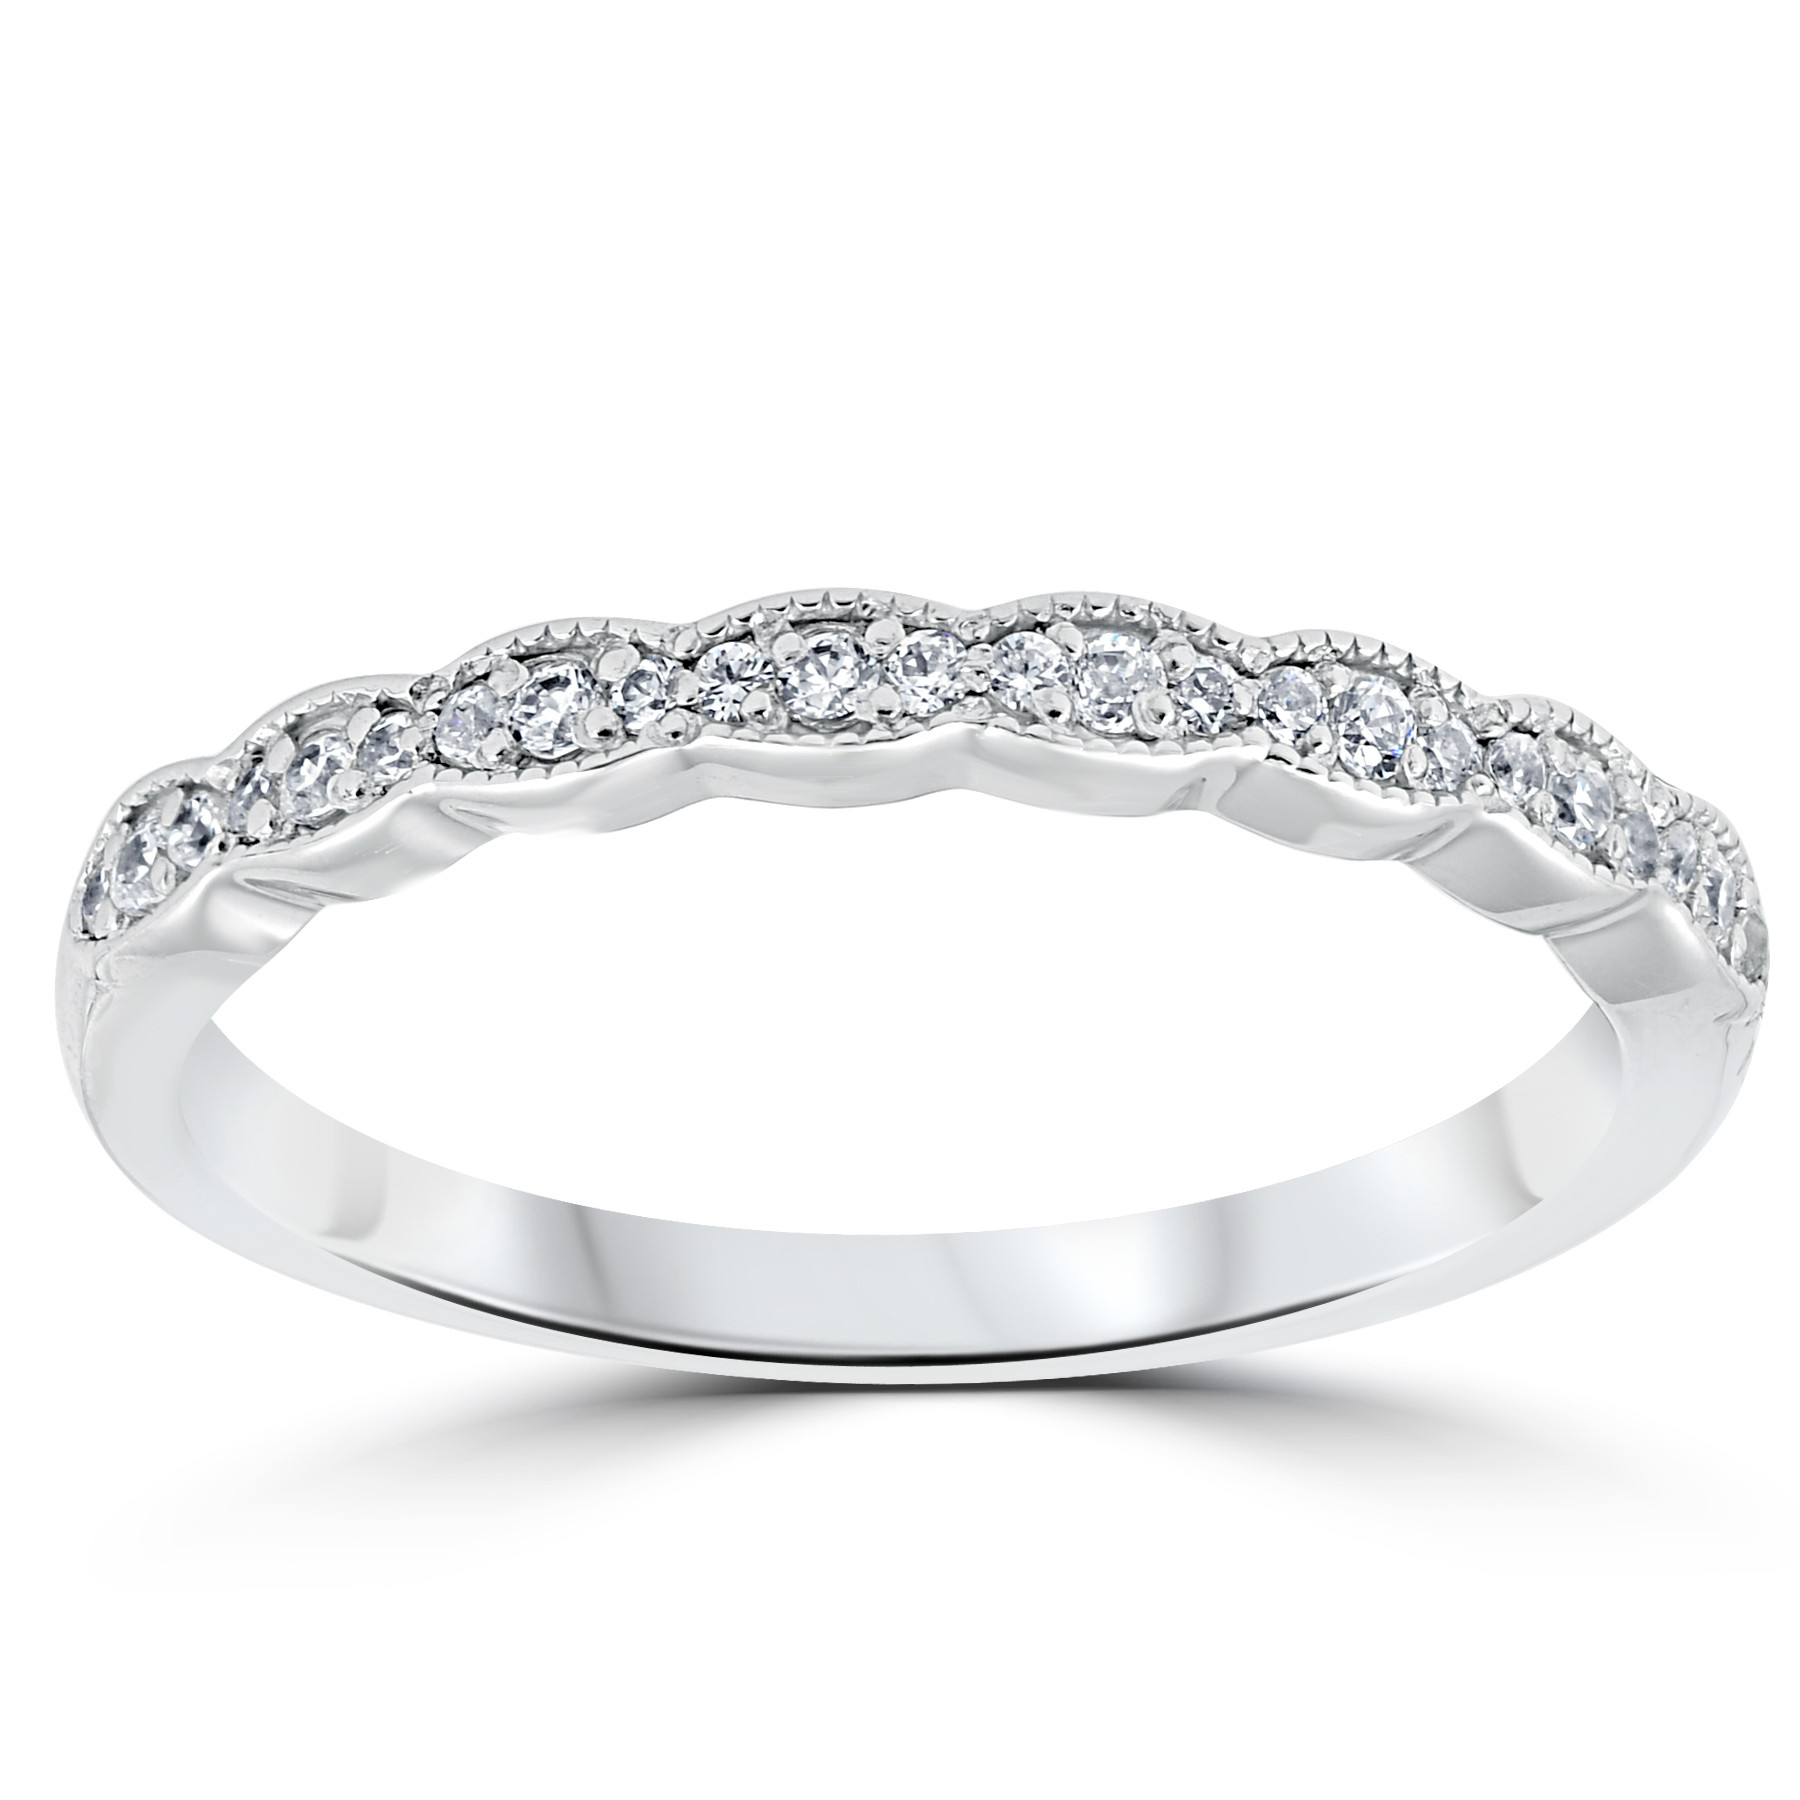 White Gold Diamond Rings For Women
 1 5 cttw Diamond Stackable Womens Wedding Ring 14k White Gold